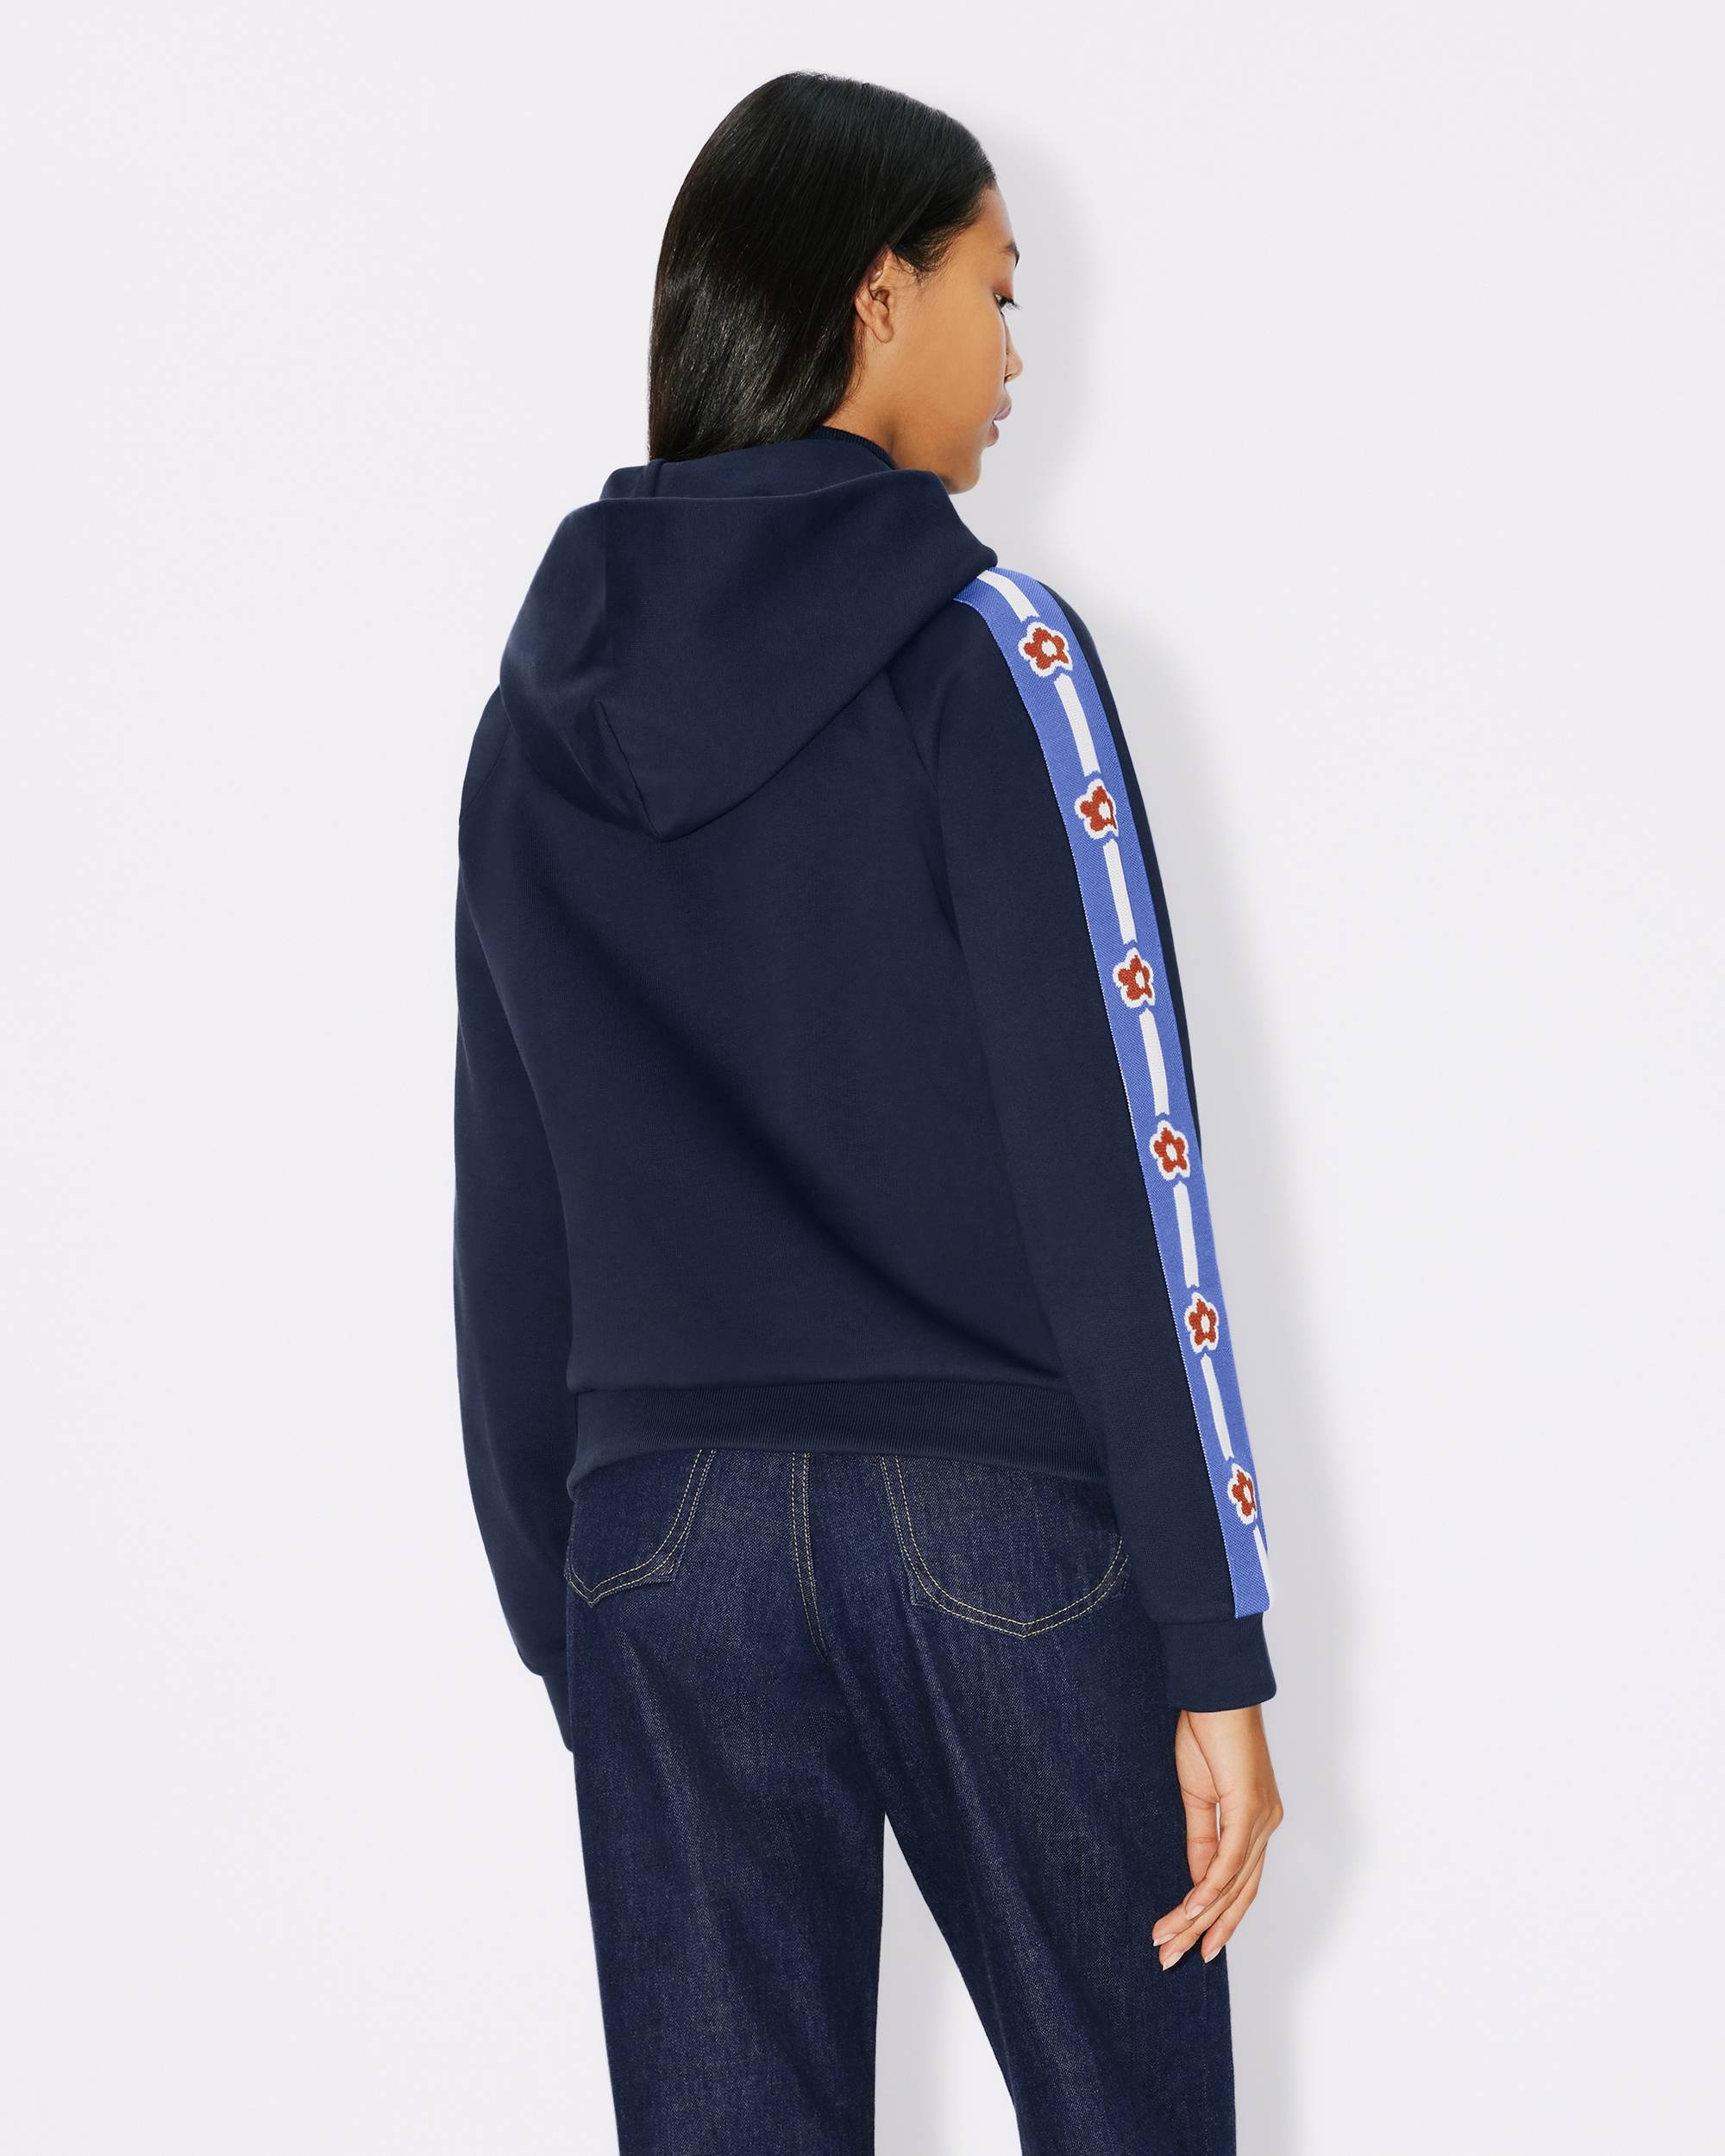 'KENZO Target' hoodie sweatshirt - 2